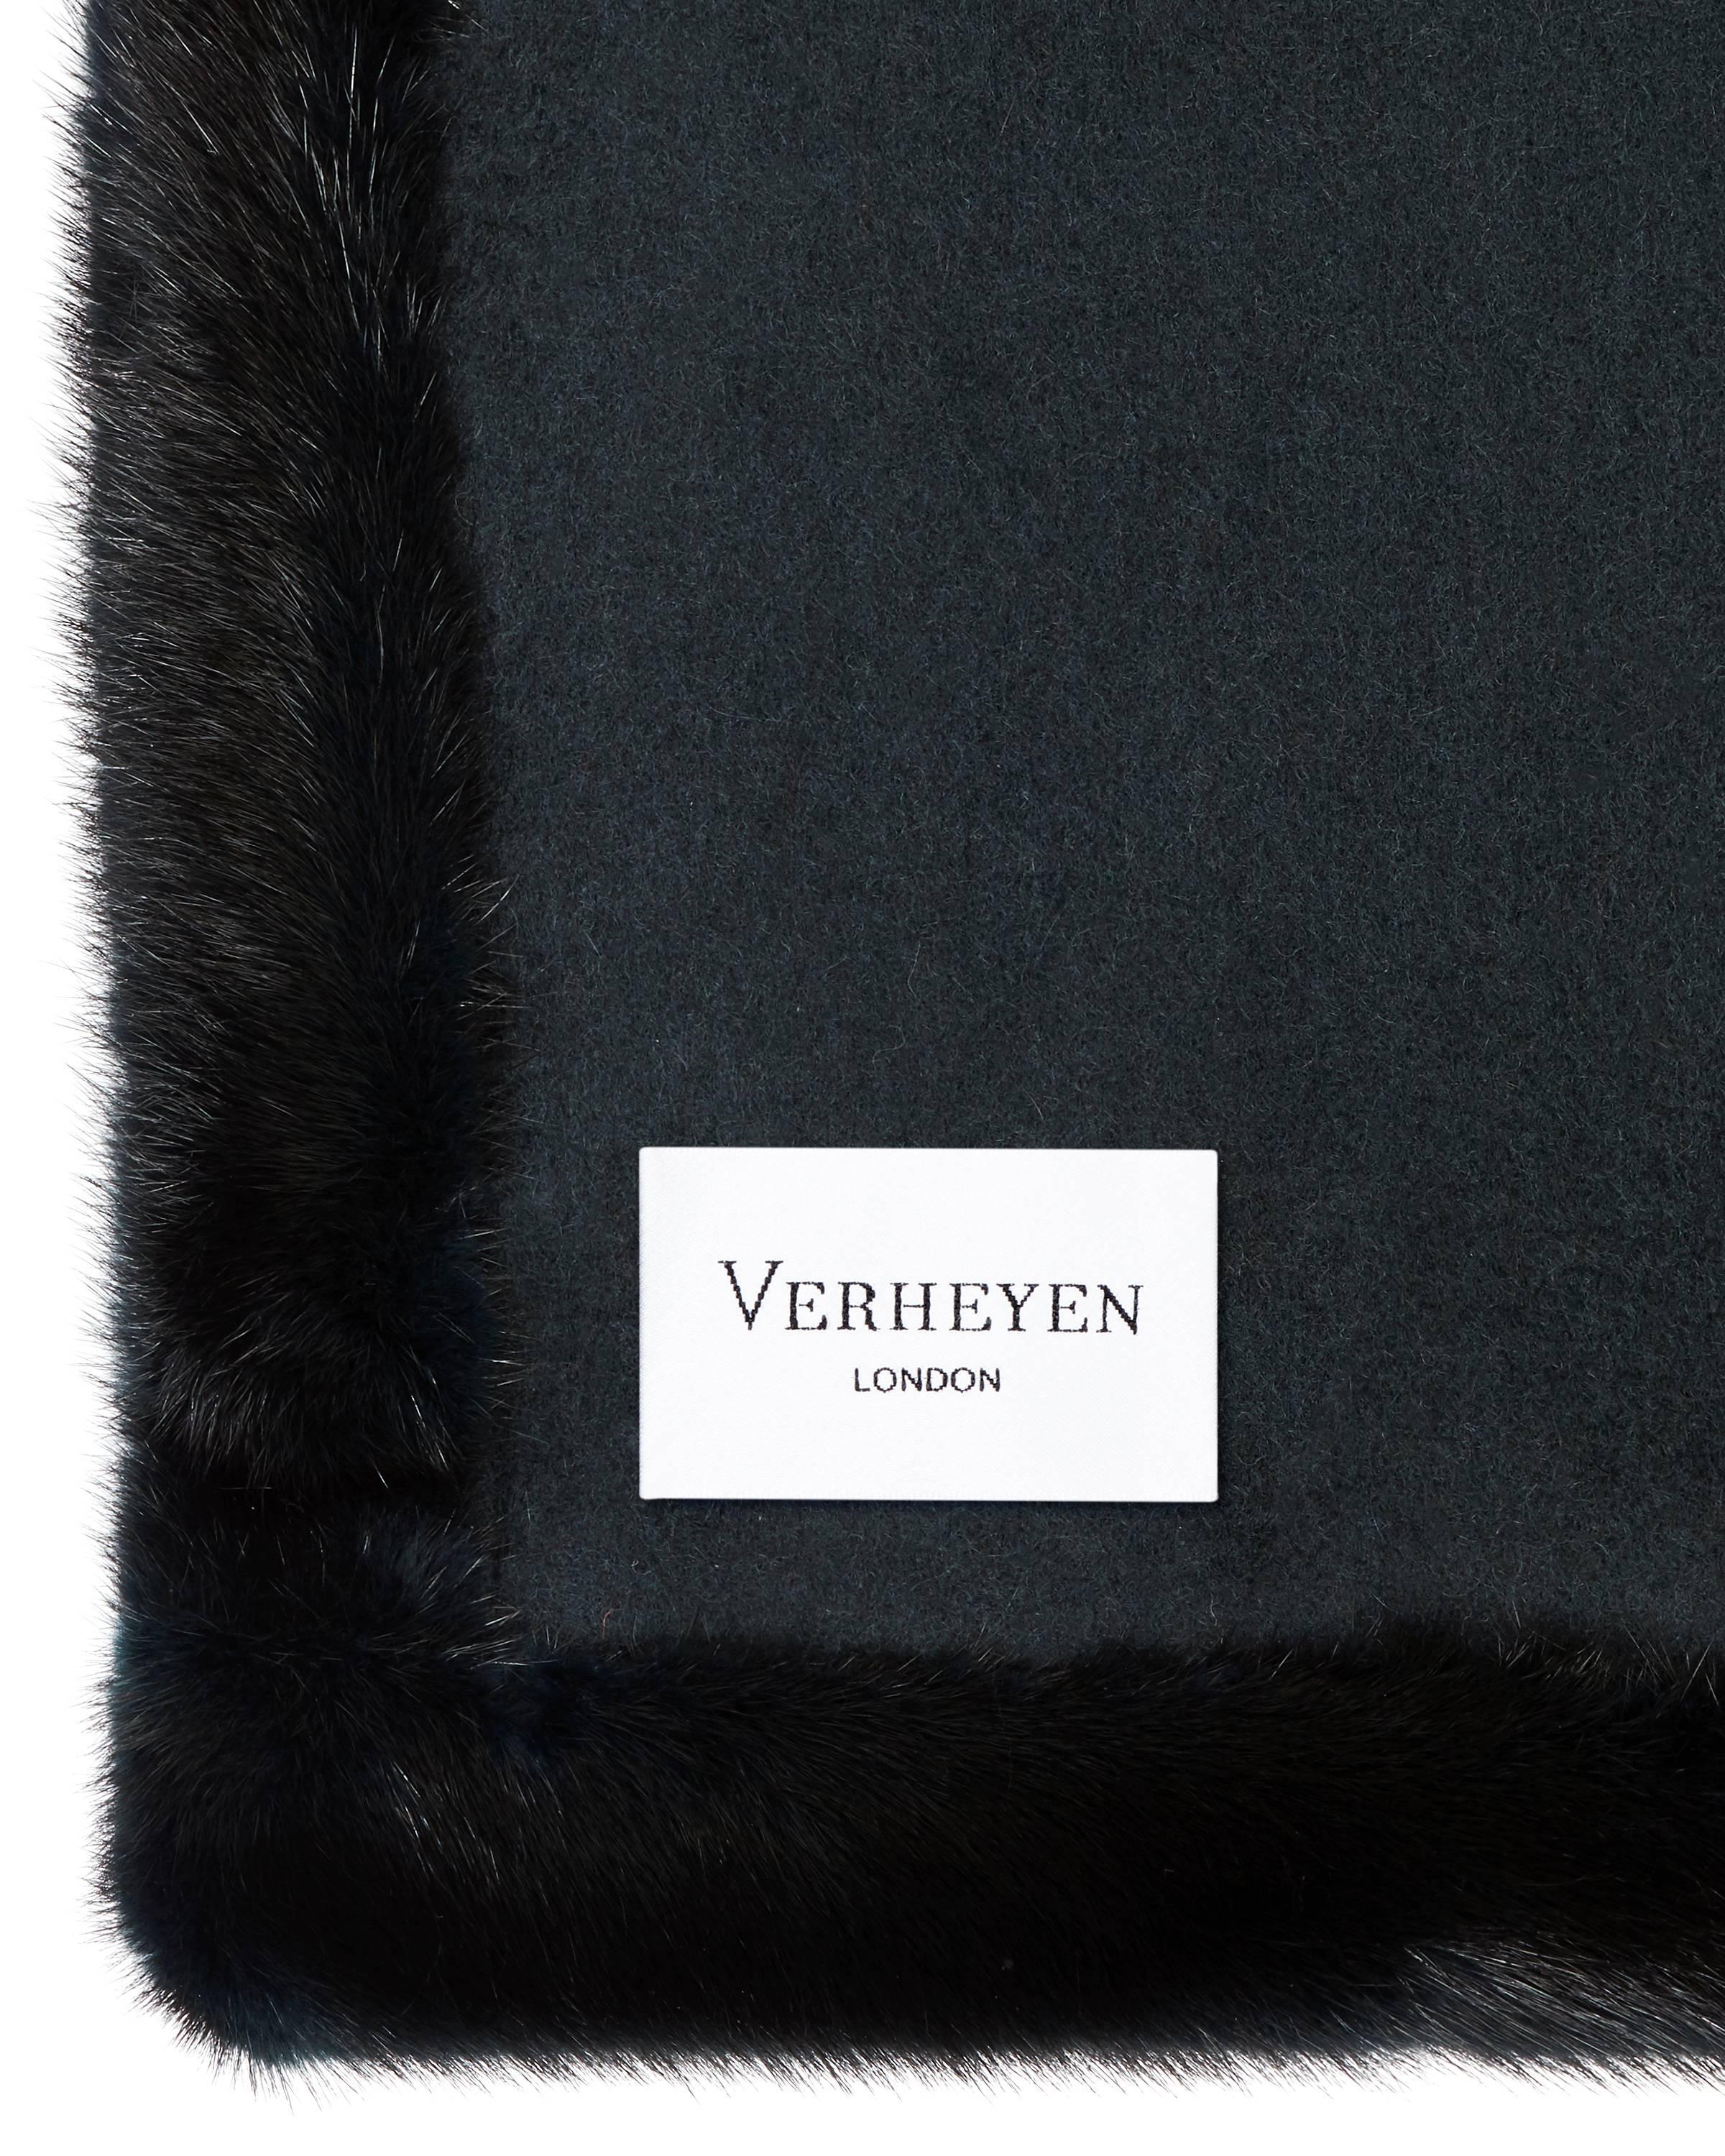 Verheyen London Limited Edition Cashmere Mink Fur Trimmed Black Teal Shawl  für Damen oder Herren